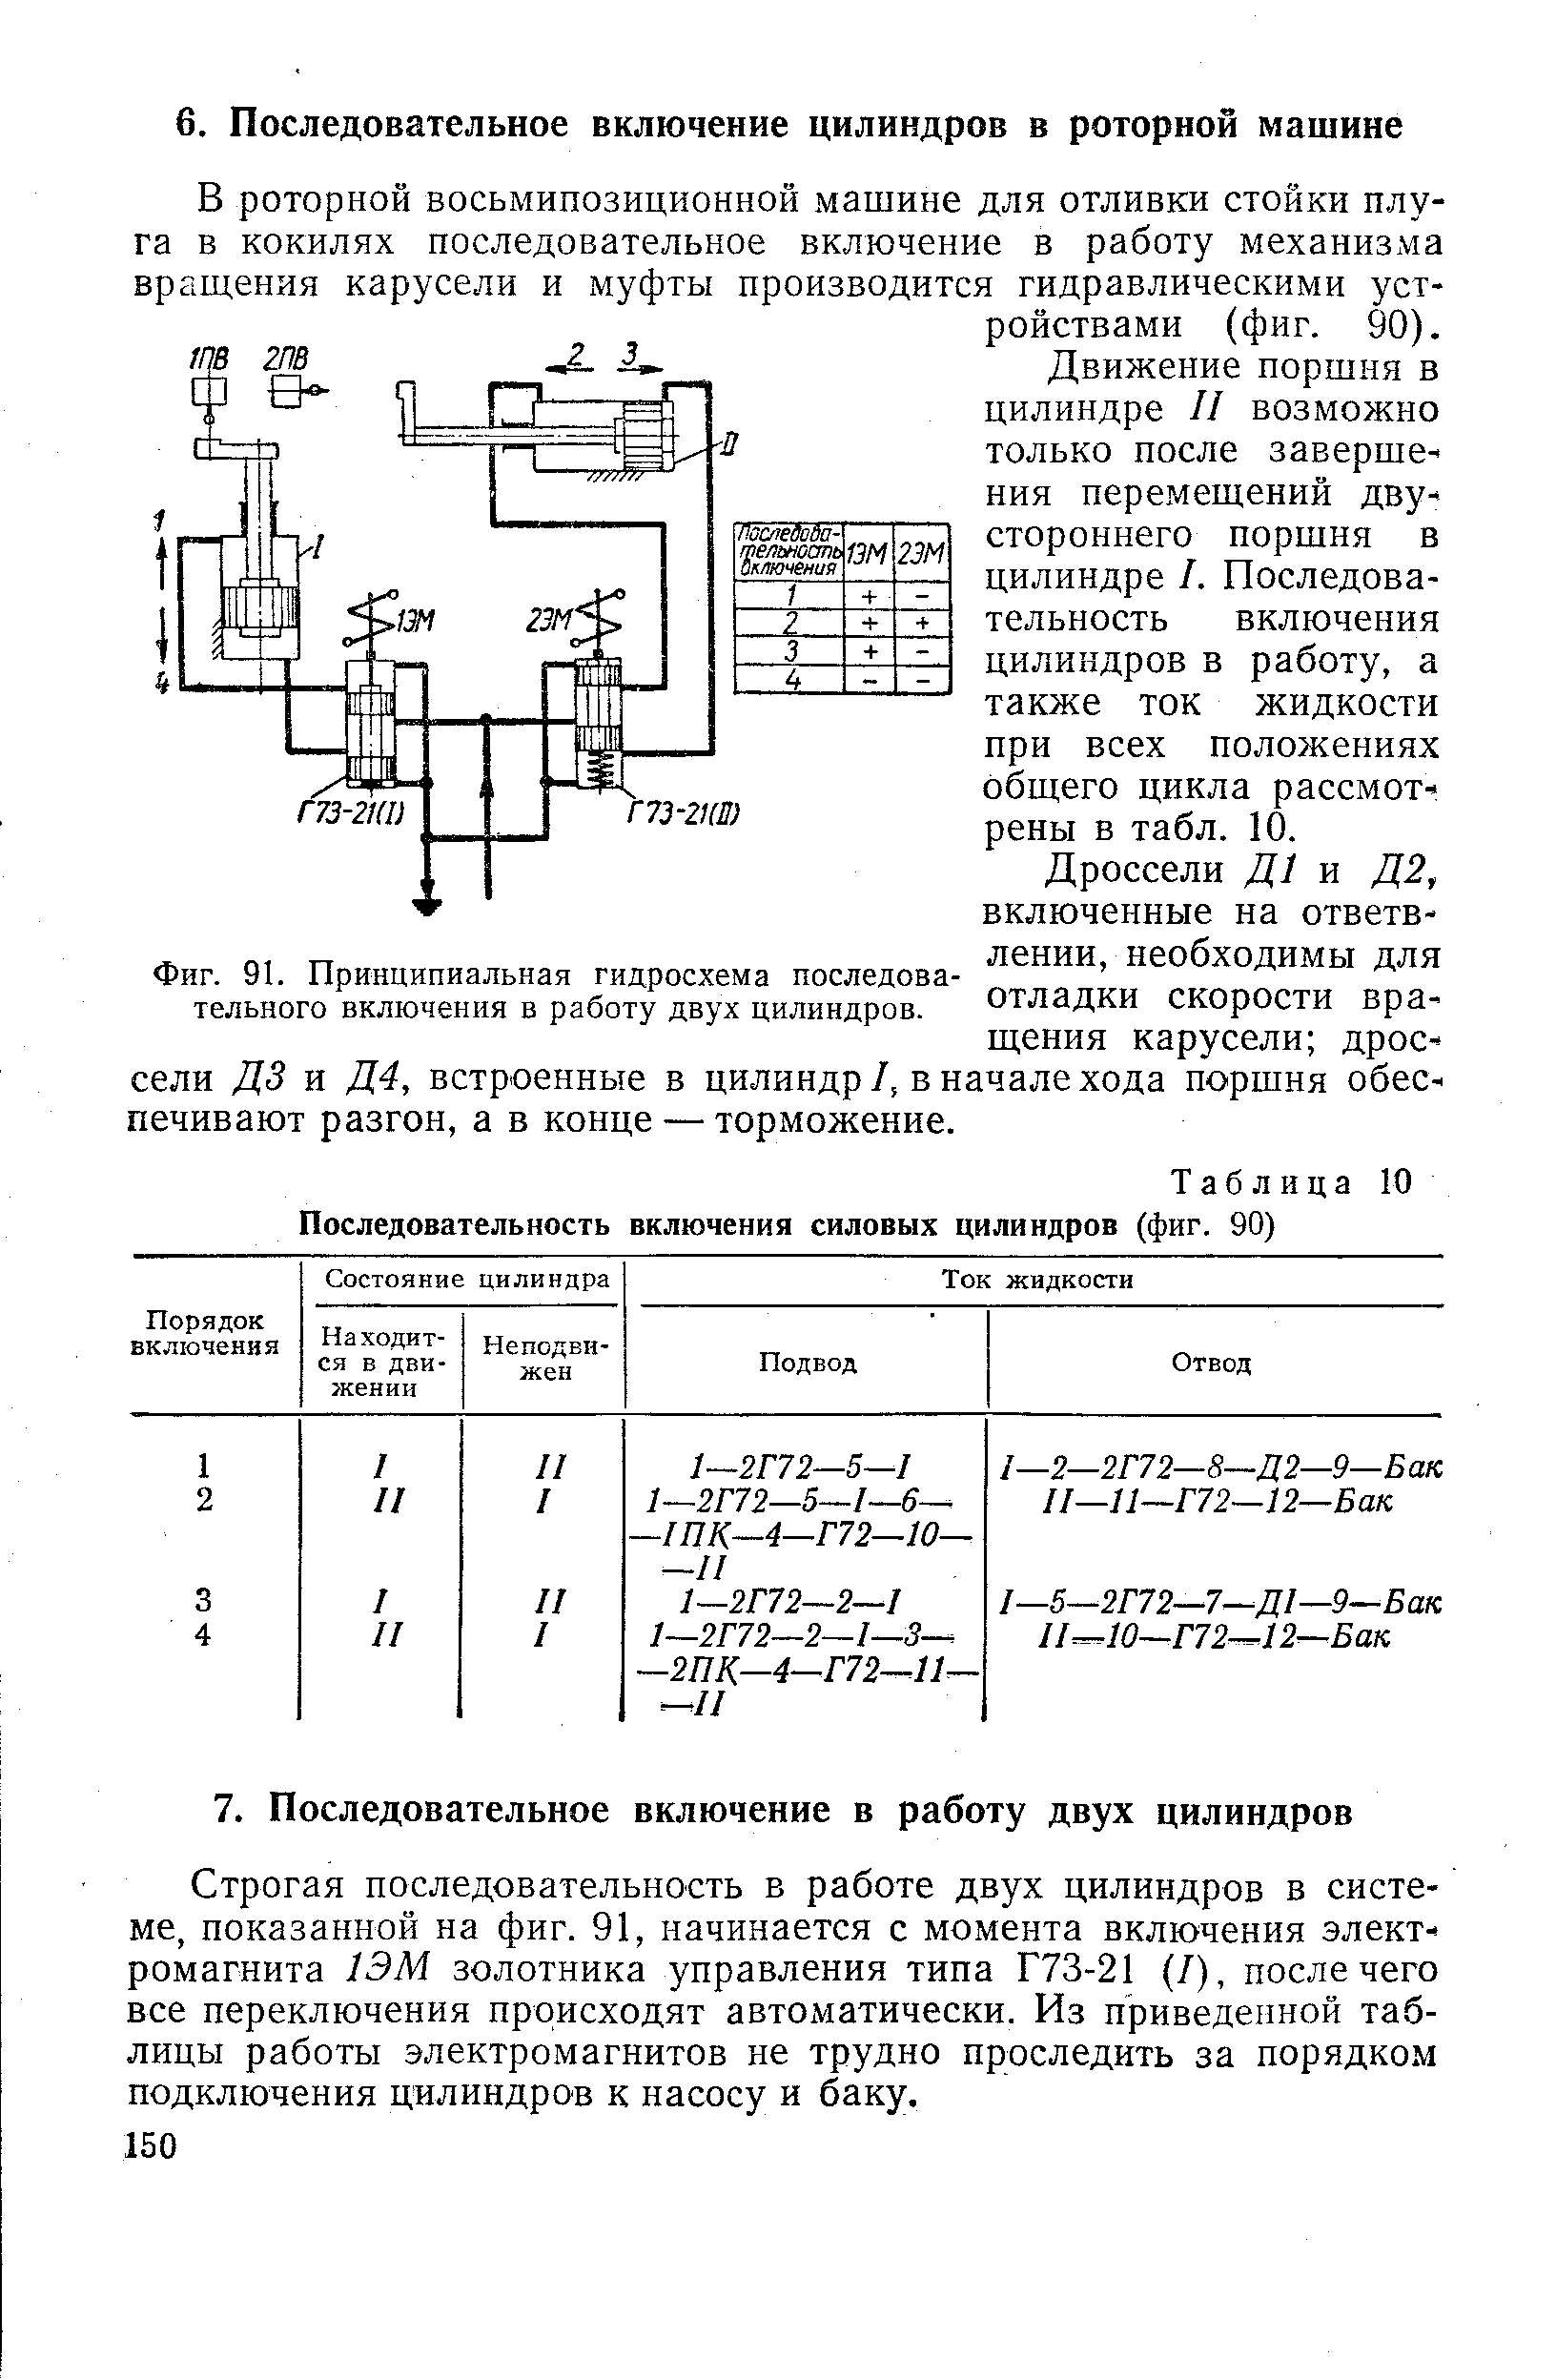 Фиг. 91. Принципиальная гидросхема последовательного включения в работу двух цилиндров.
